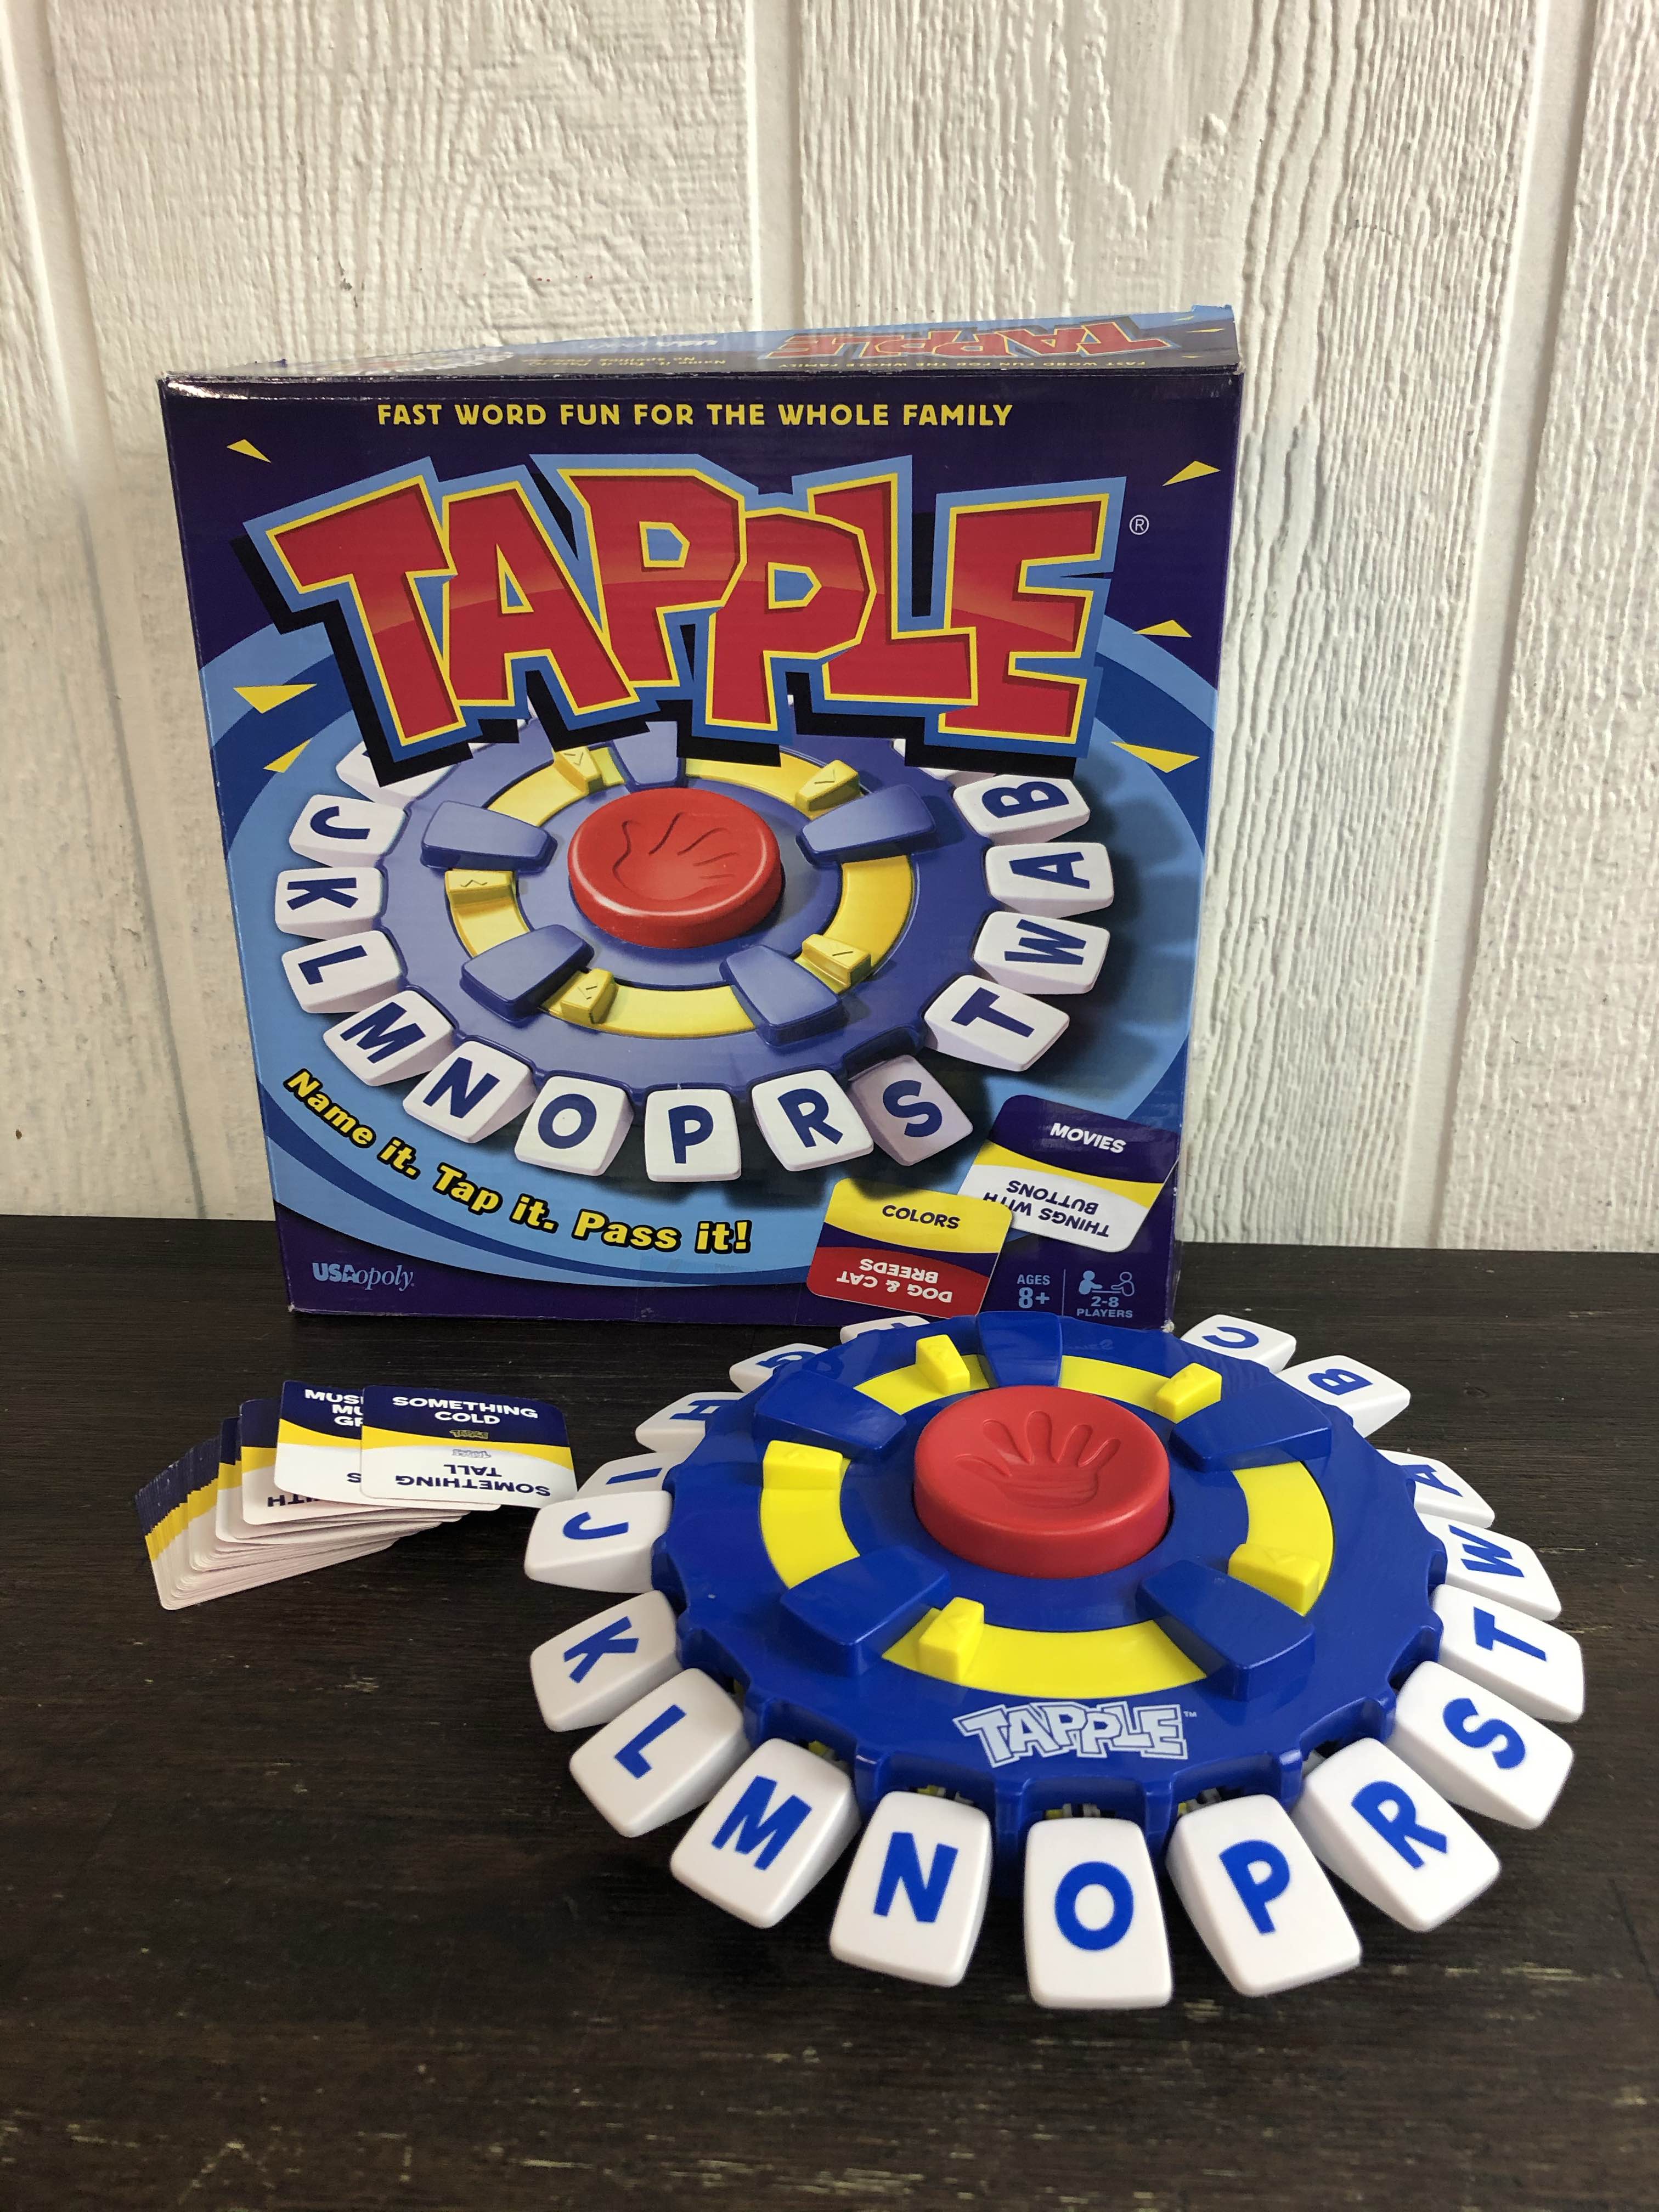 Tapple Board Game